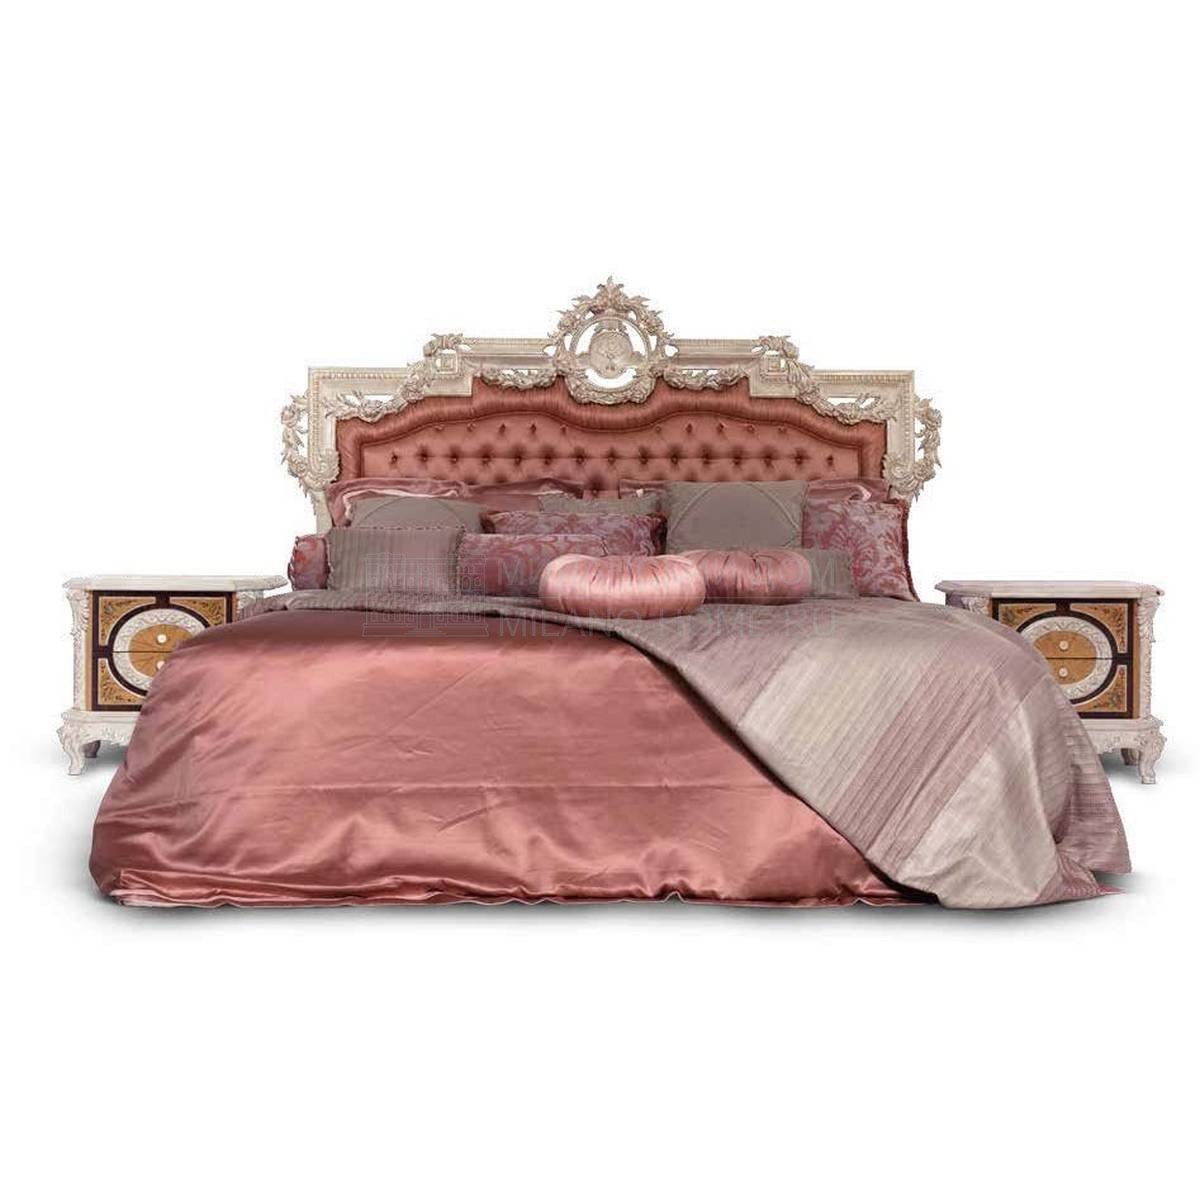 Двуспальная кровать L1.3301 Pandora/bed из Италии фабрики ASNAGHI INTERIORS